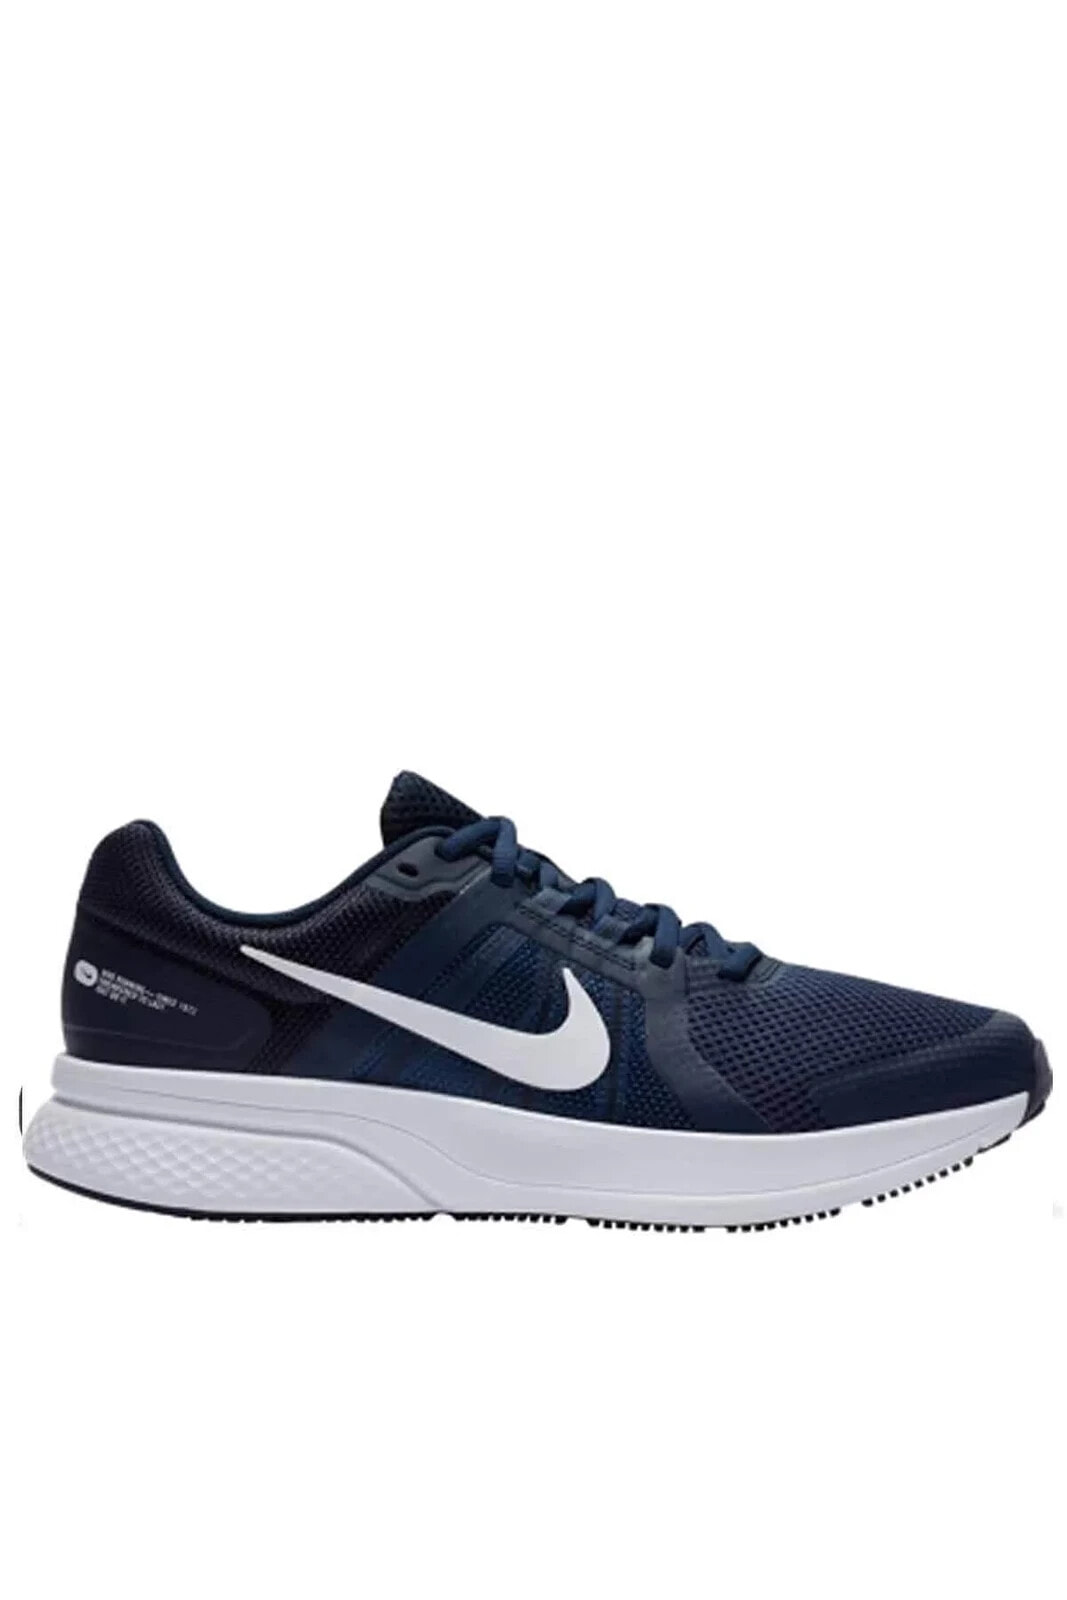 Erkek Yürüyüş Koşu Ayakkabı Cu3517-400-mavi